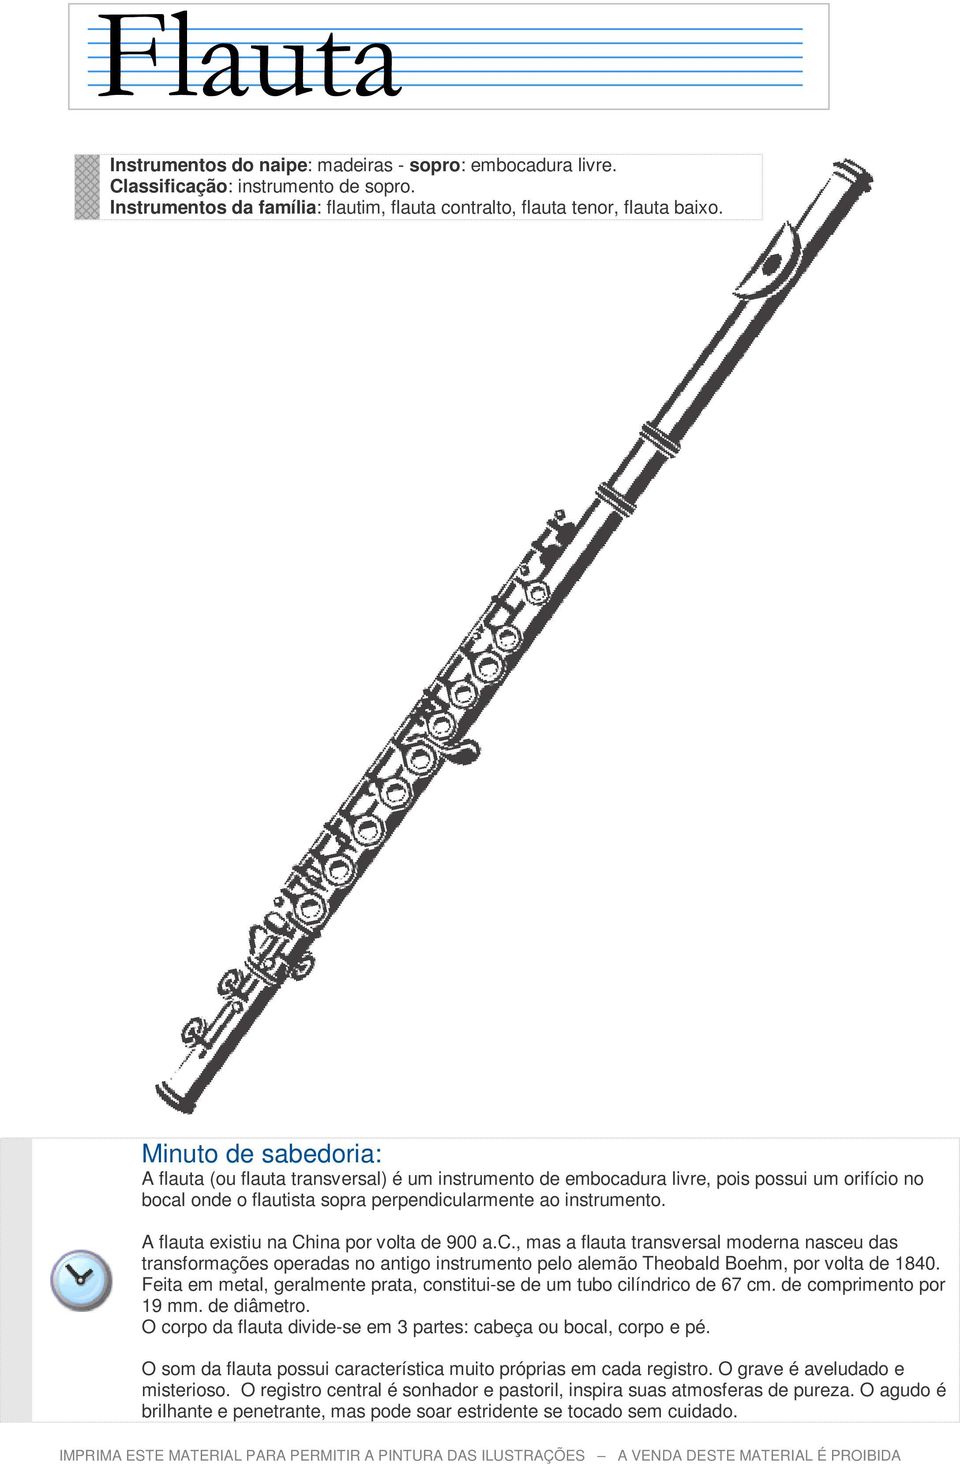 A flauta existiu na China por volta de 900 a.c., mas a flauta transversal moderna nasceu das transformações operadas no antigo instrumento pelo alemão Theobald Boehm, por volta de 1840.